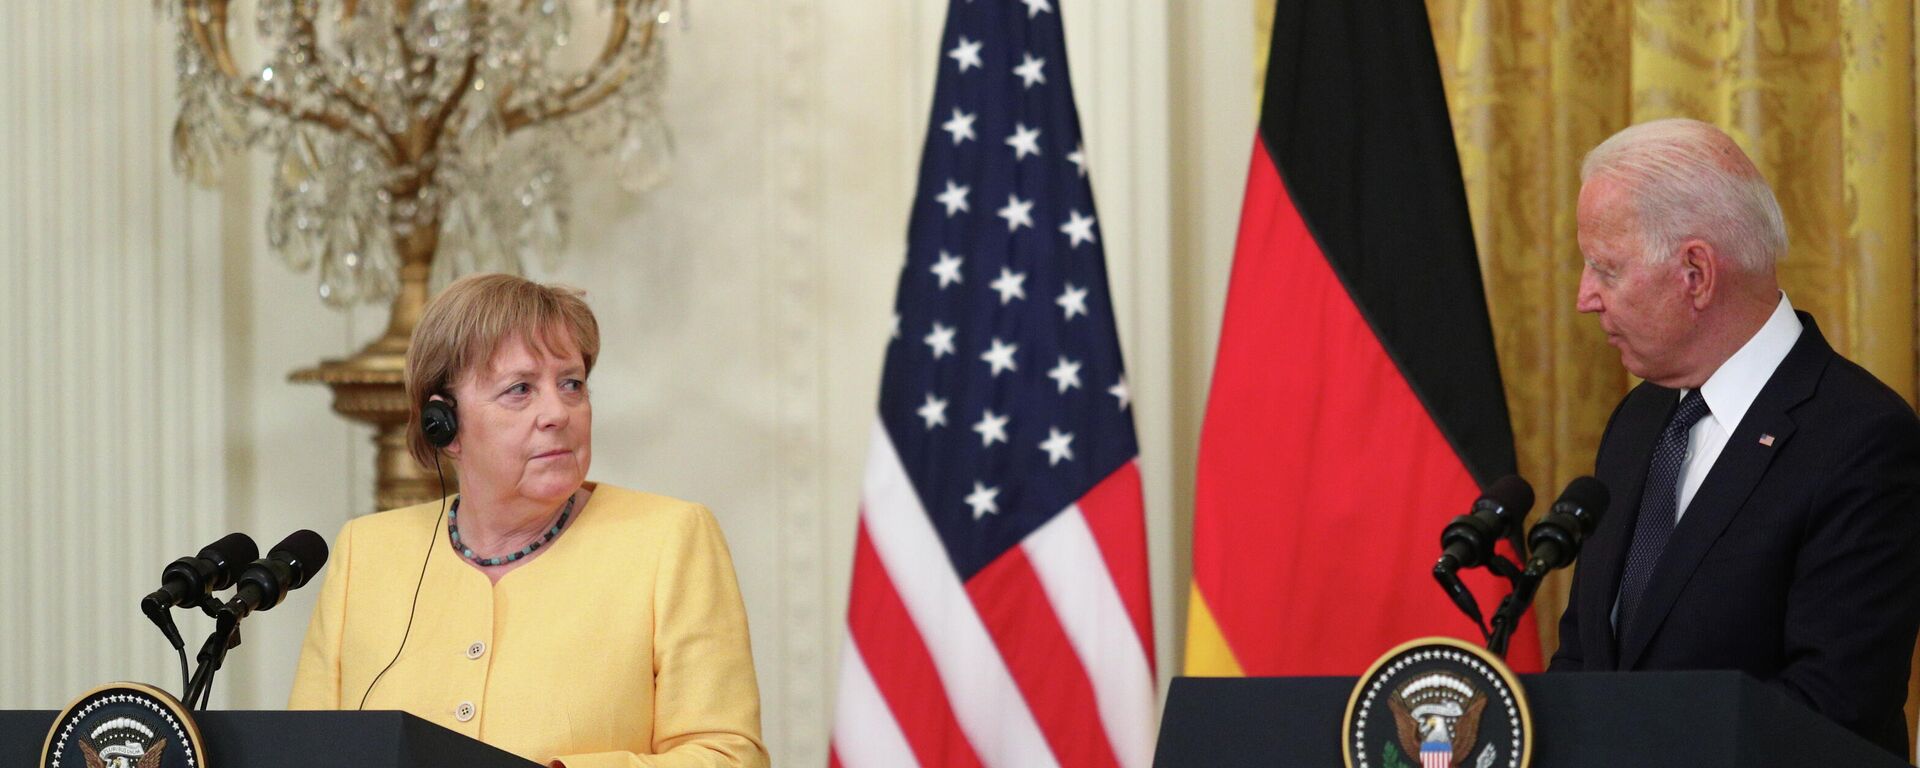 JAV prezidentas Džo Baidenas ir Vokietijos kanclerė Angela Merkel bendroje spaudos konferencijoje Vašingtone - Sputnik Lietuva, 1920, 25.07.2021